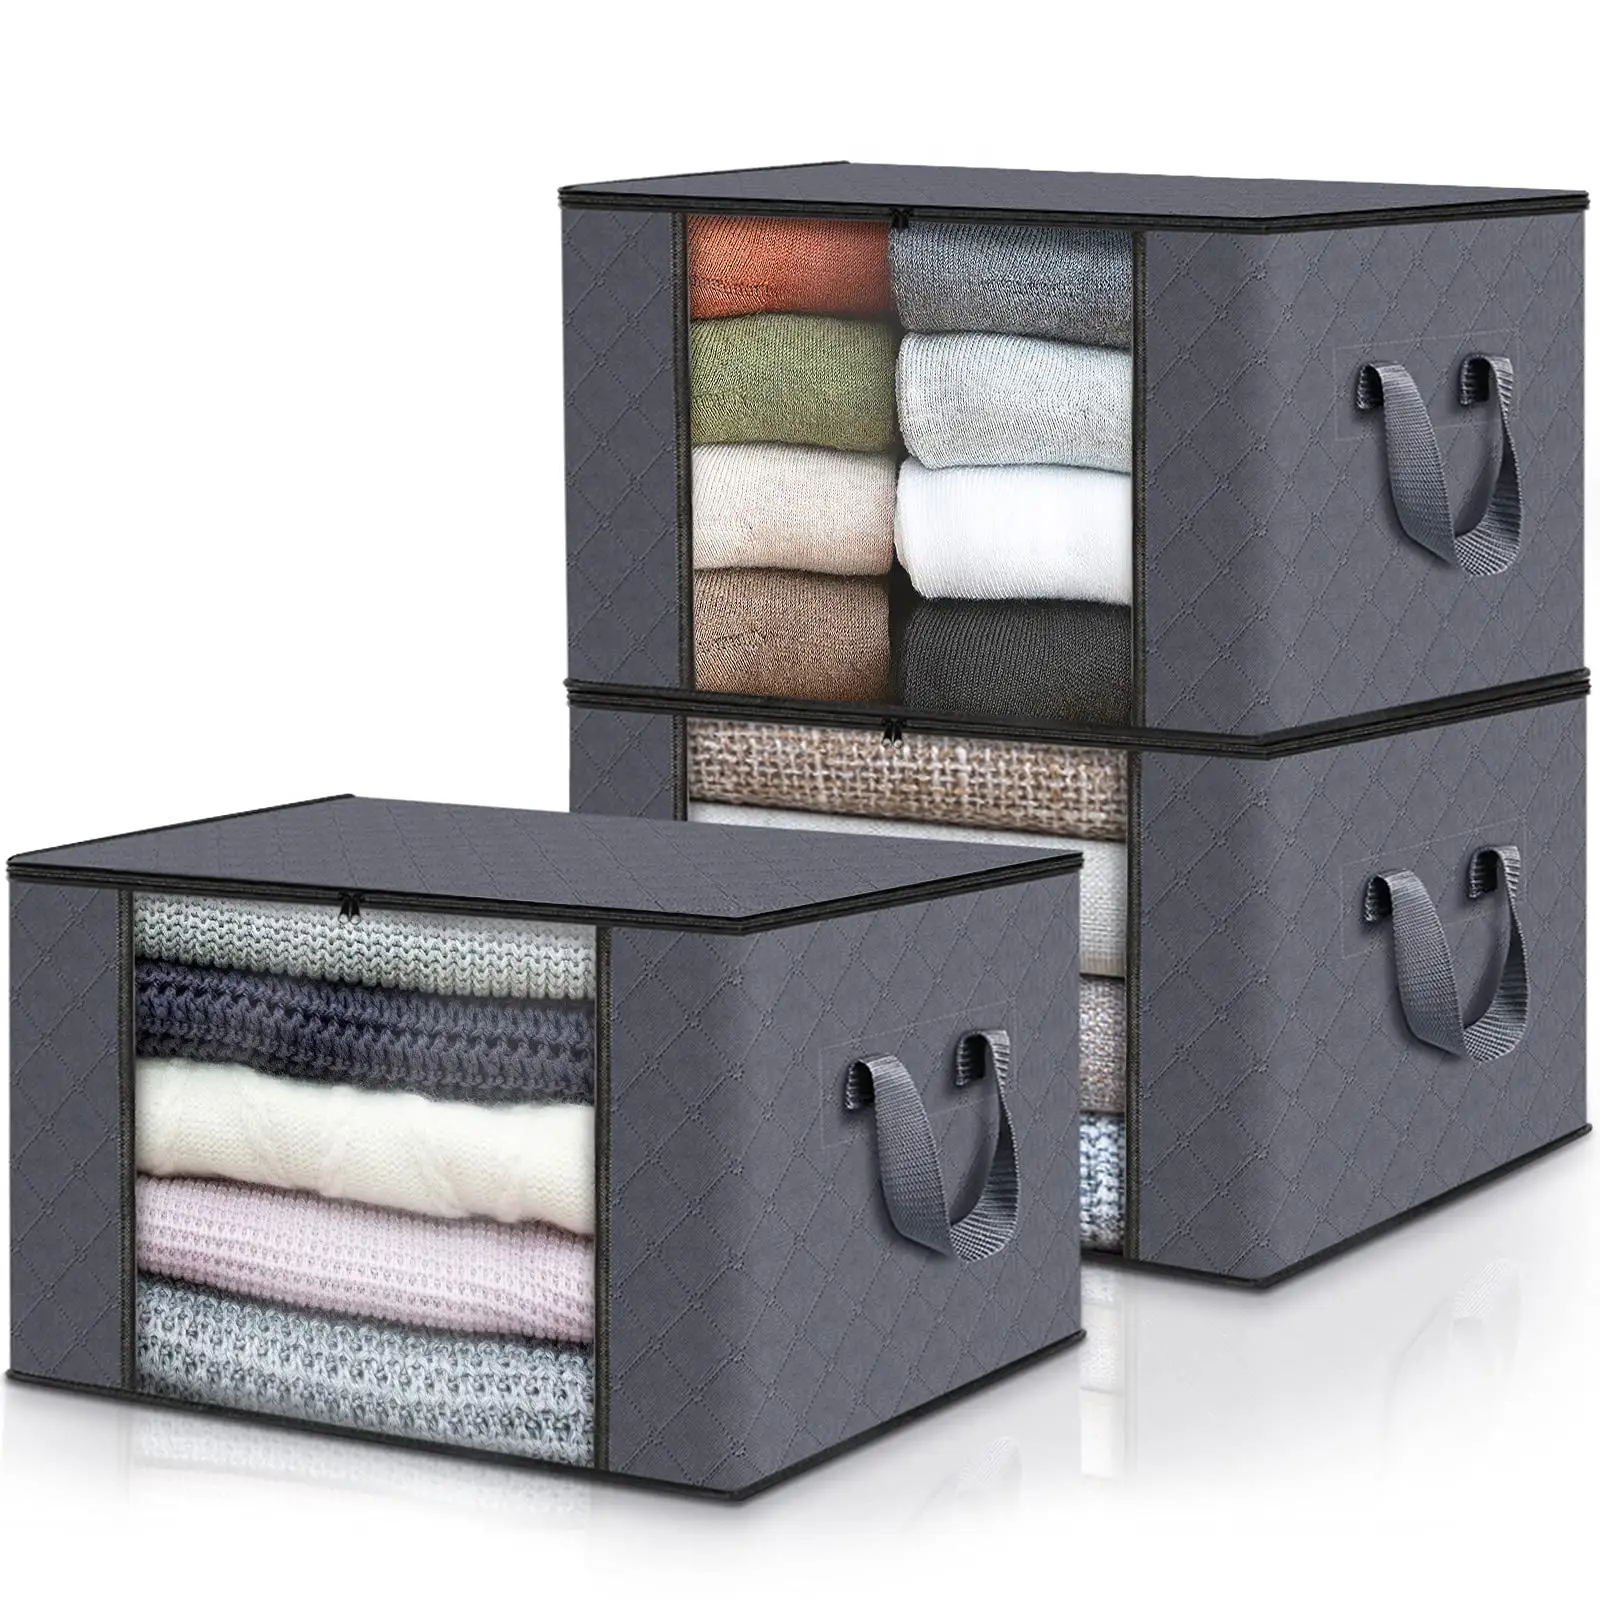 Bolsa de almacenamiento de ropa extragrande, manta plegable gris no tejida, con cremallera y ventana transparente